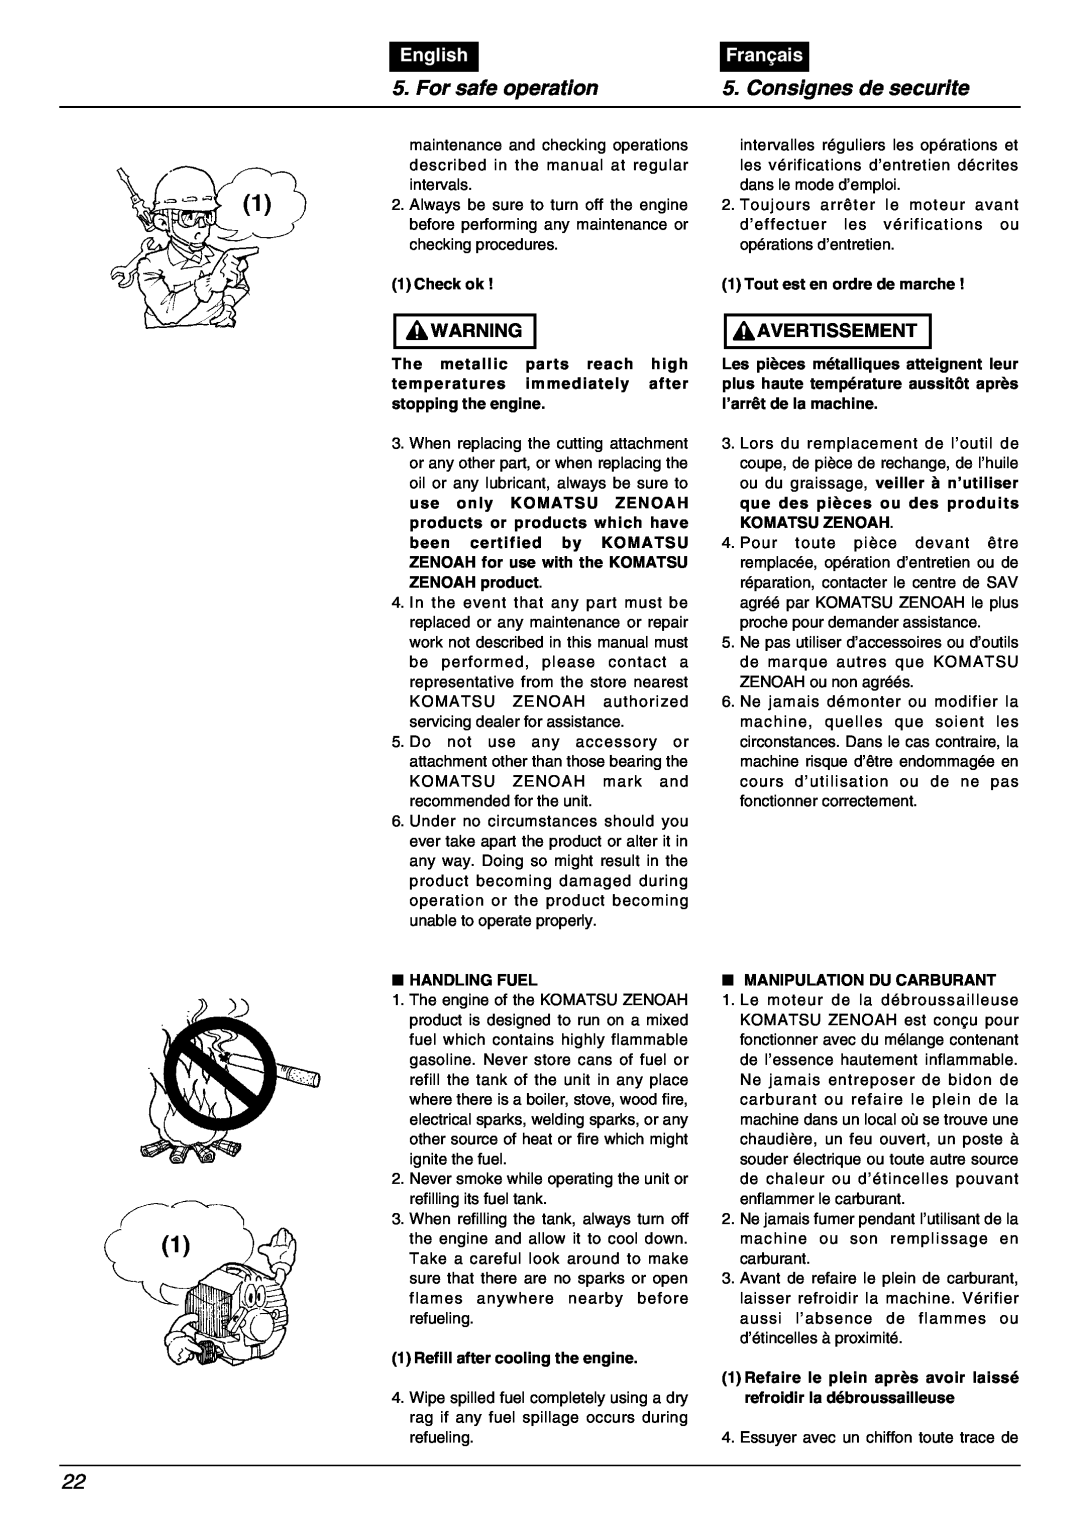 Zenoah BC2000 manual For safe operation, Consignes de securite, English, Français, Check ok 